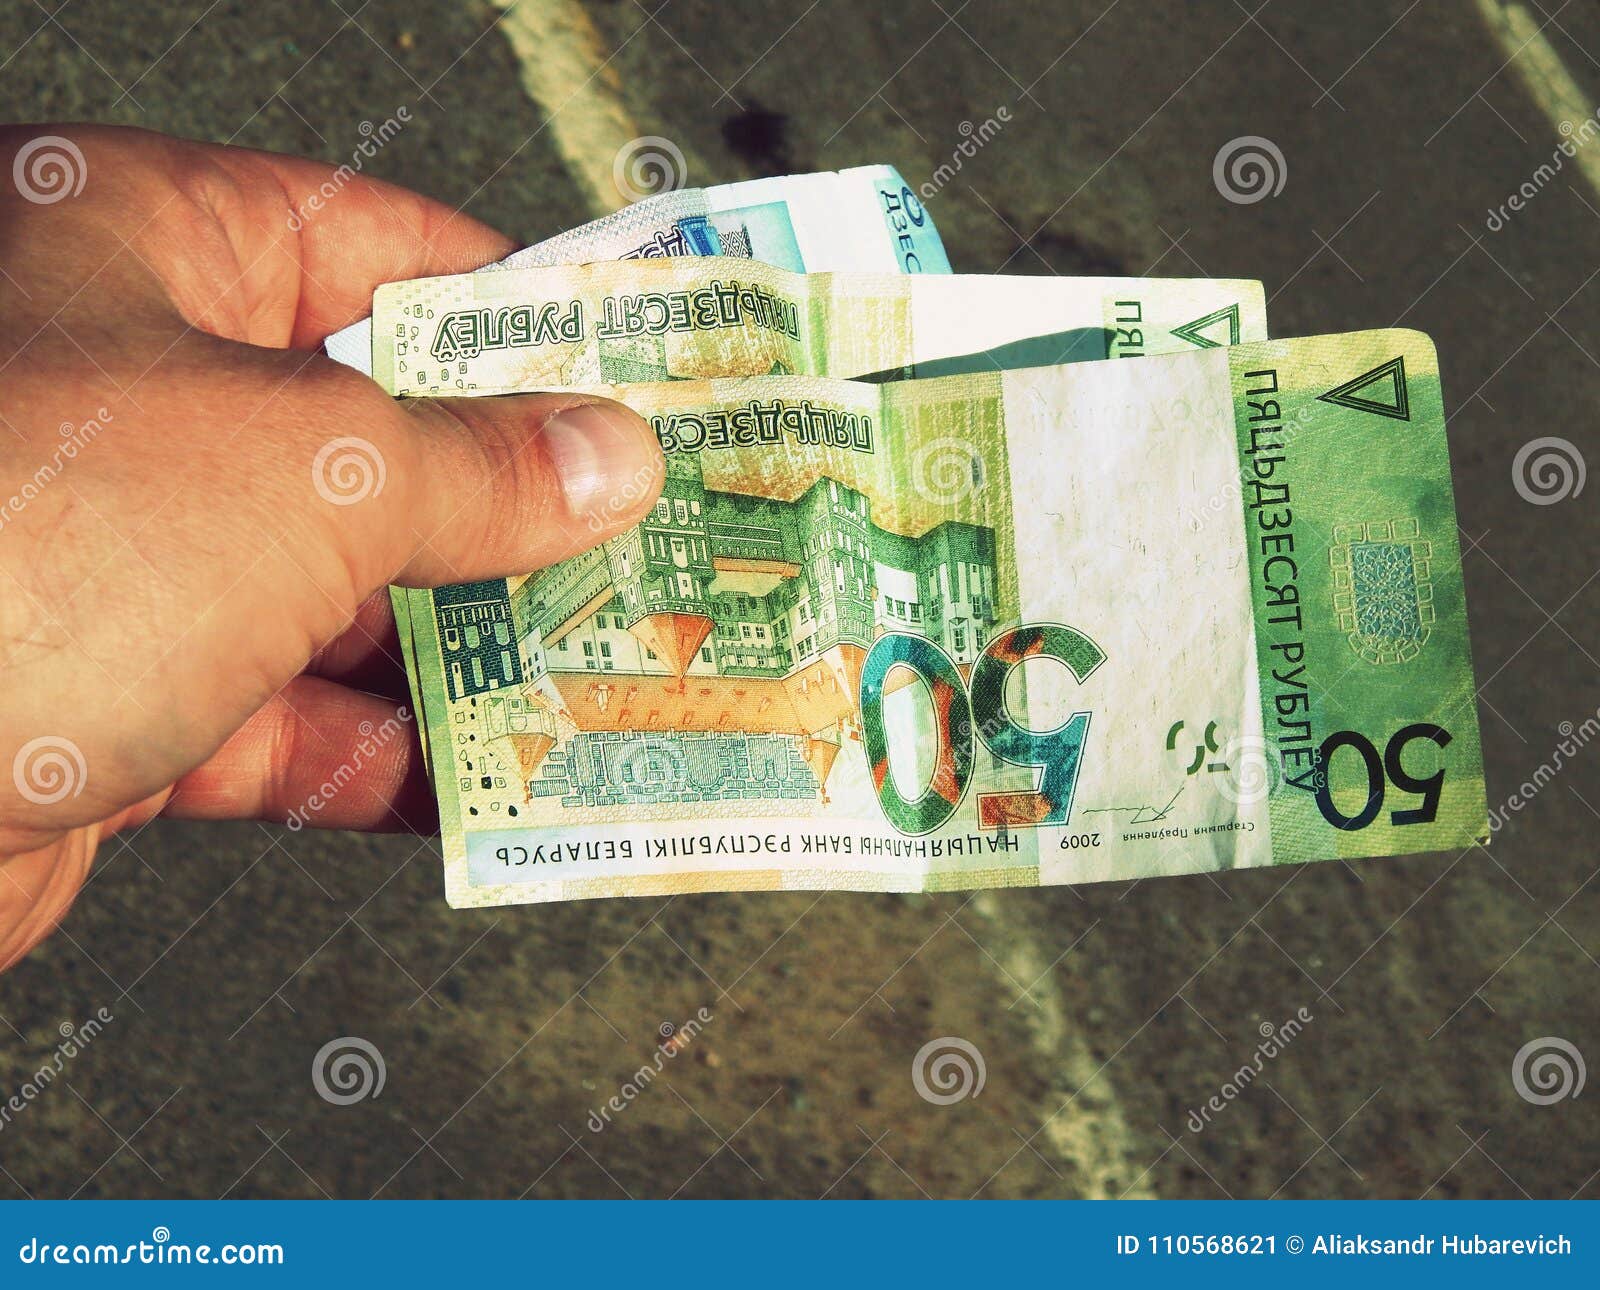 150 белорусских рублей в рублях. Белорусские рубли в руках. СТО рублей в руке. 100 Рублей в руке. Купюры Беларуси в руках.